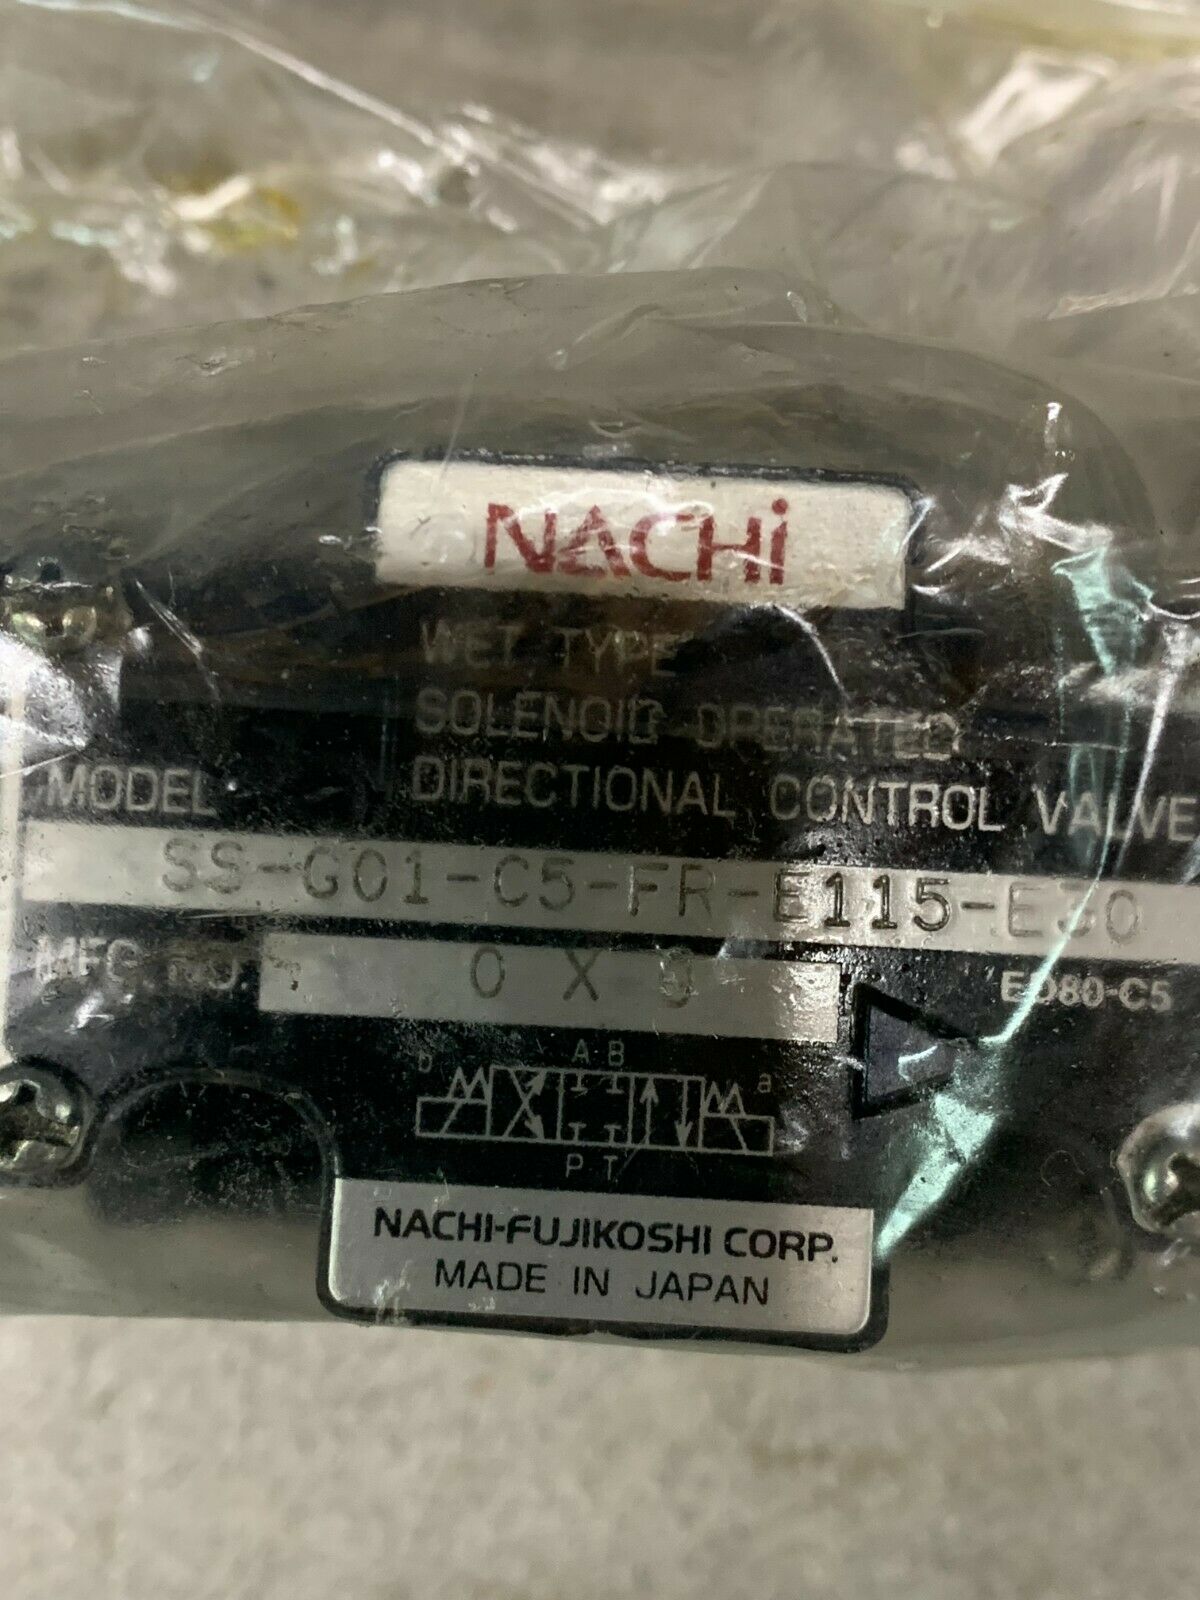 NEW NO BOX NACHI HYDRAULIC CONTROL VALVE SS-G01-C5-FR-E115-E30